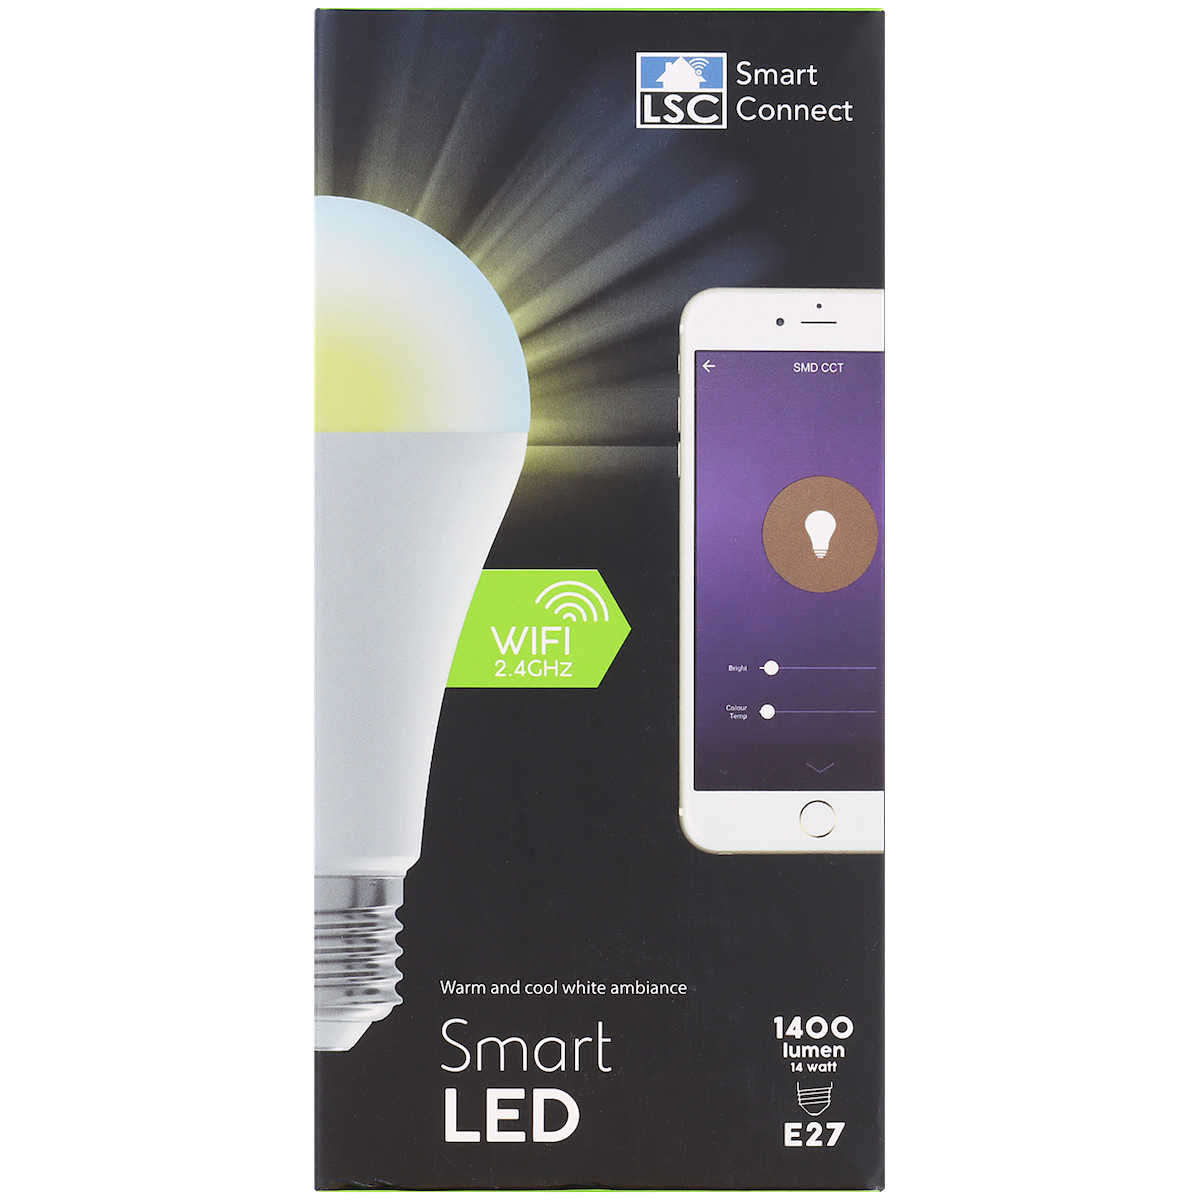 LSC Smart Connect Intelligente LED-Glühbirne

14 Watt | 1.400 Lumen - DeinMarkt.at 